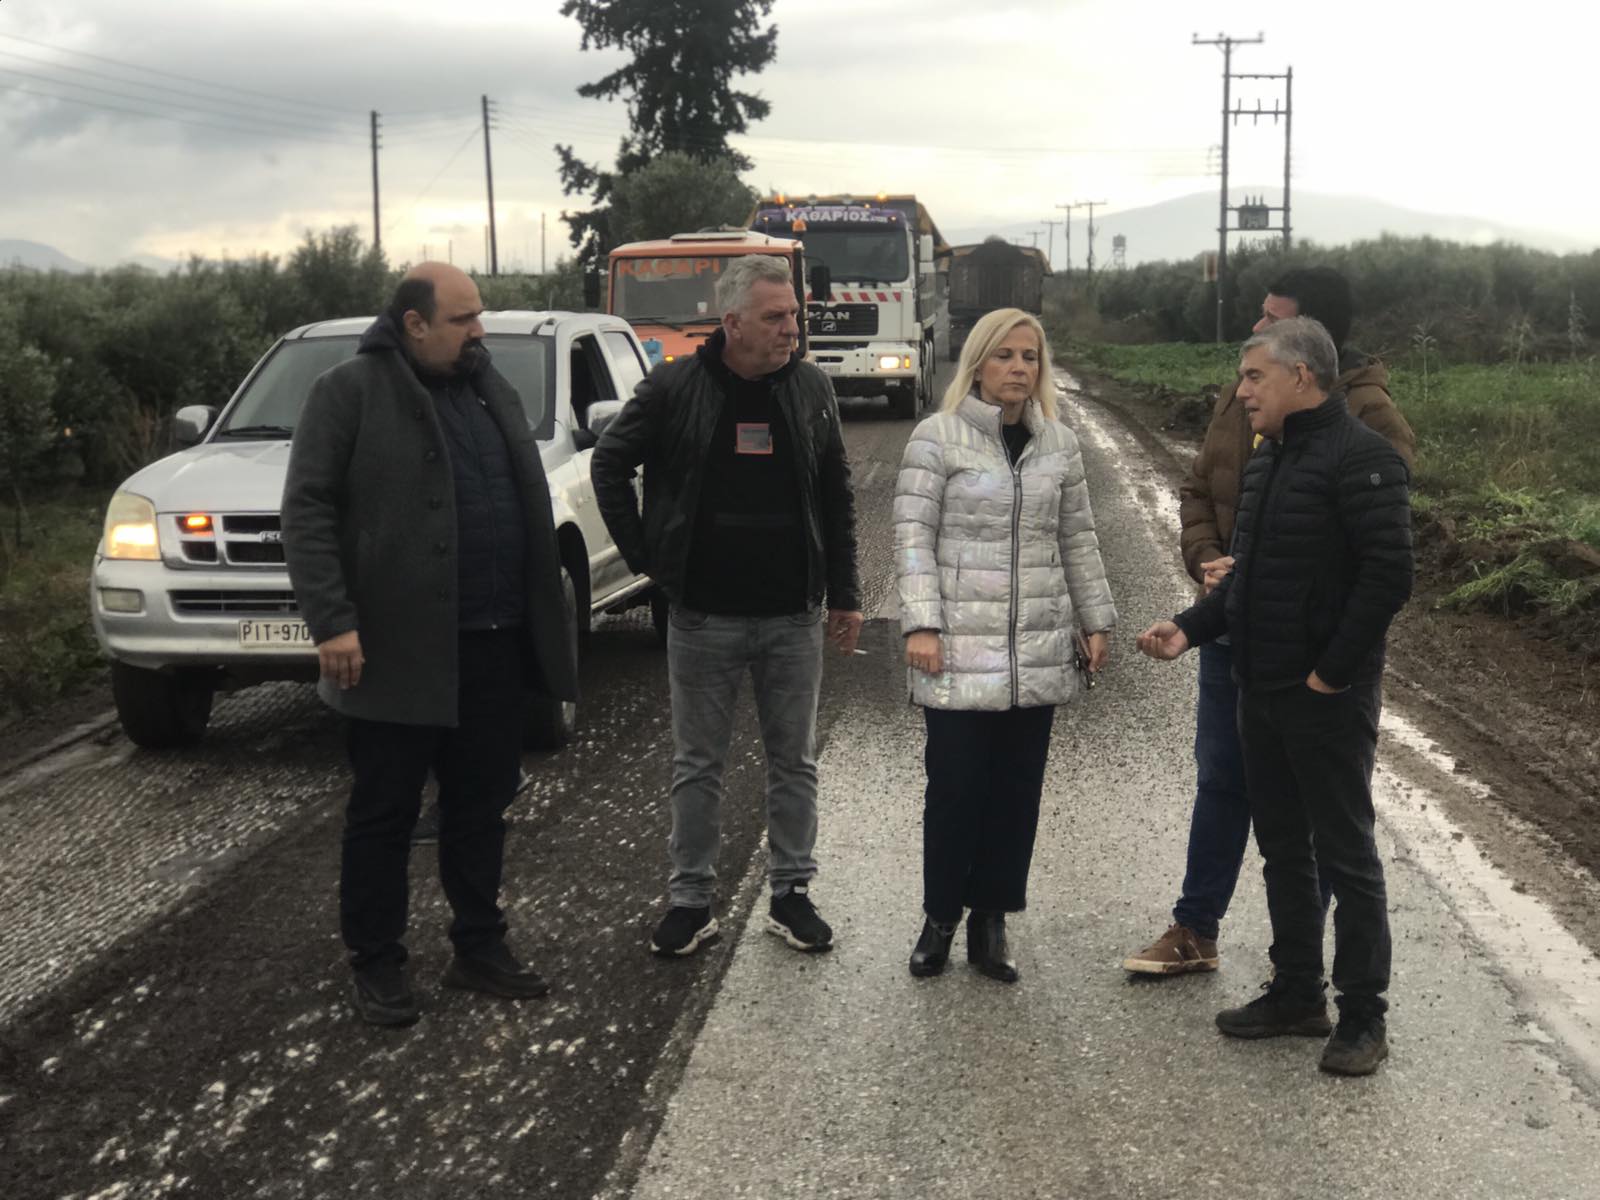 Νέα ασφαλτόστρωση στο δρόμο που οδηγεί στη 111 Πτέρυγα Μάχης   στη Ν. Αγχίαλο από την Περιφέρεια Θεσσαλίας